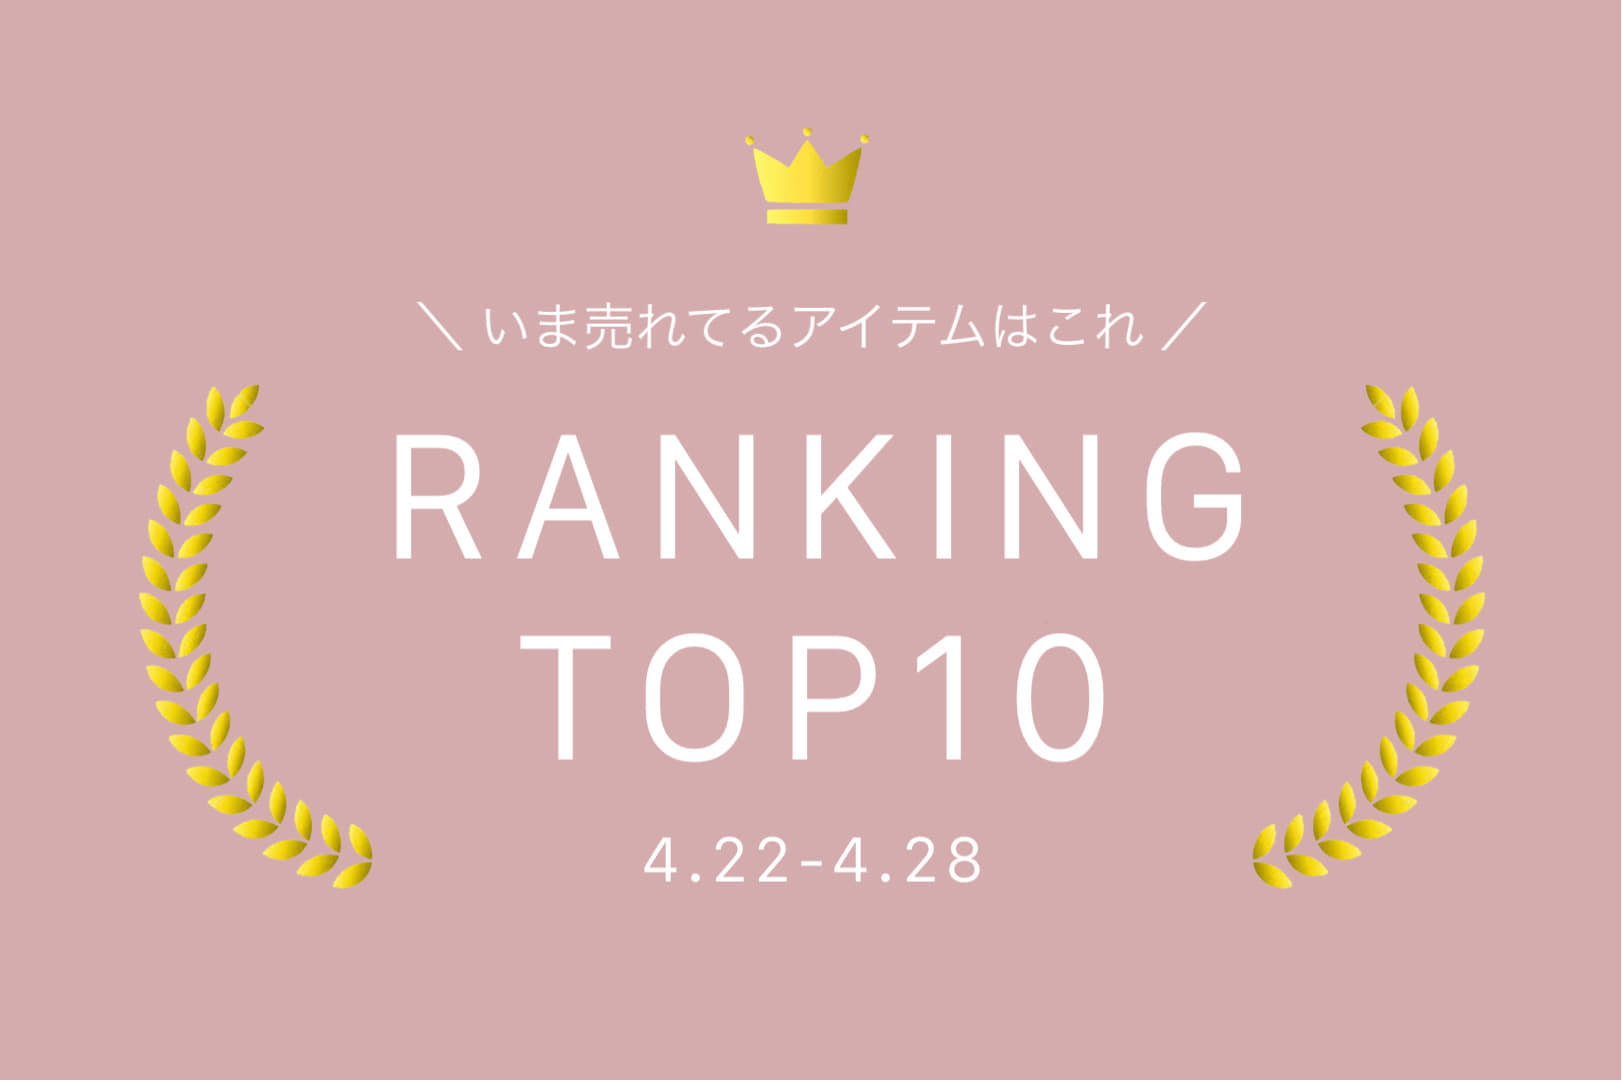 Kastane 【4.22-4.28】WEEKLY RANKING TOP10